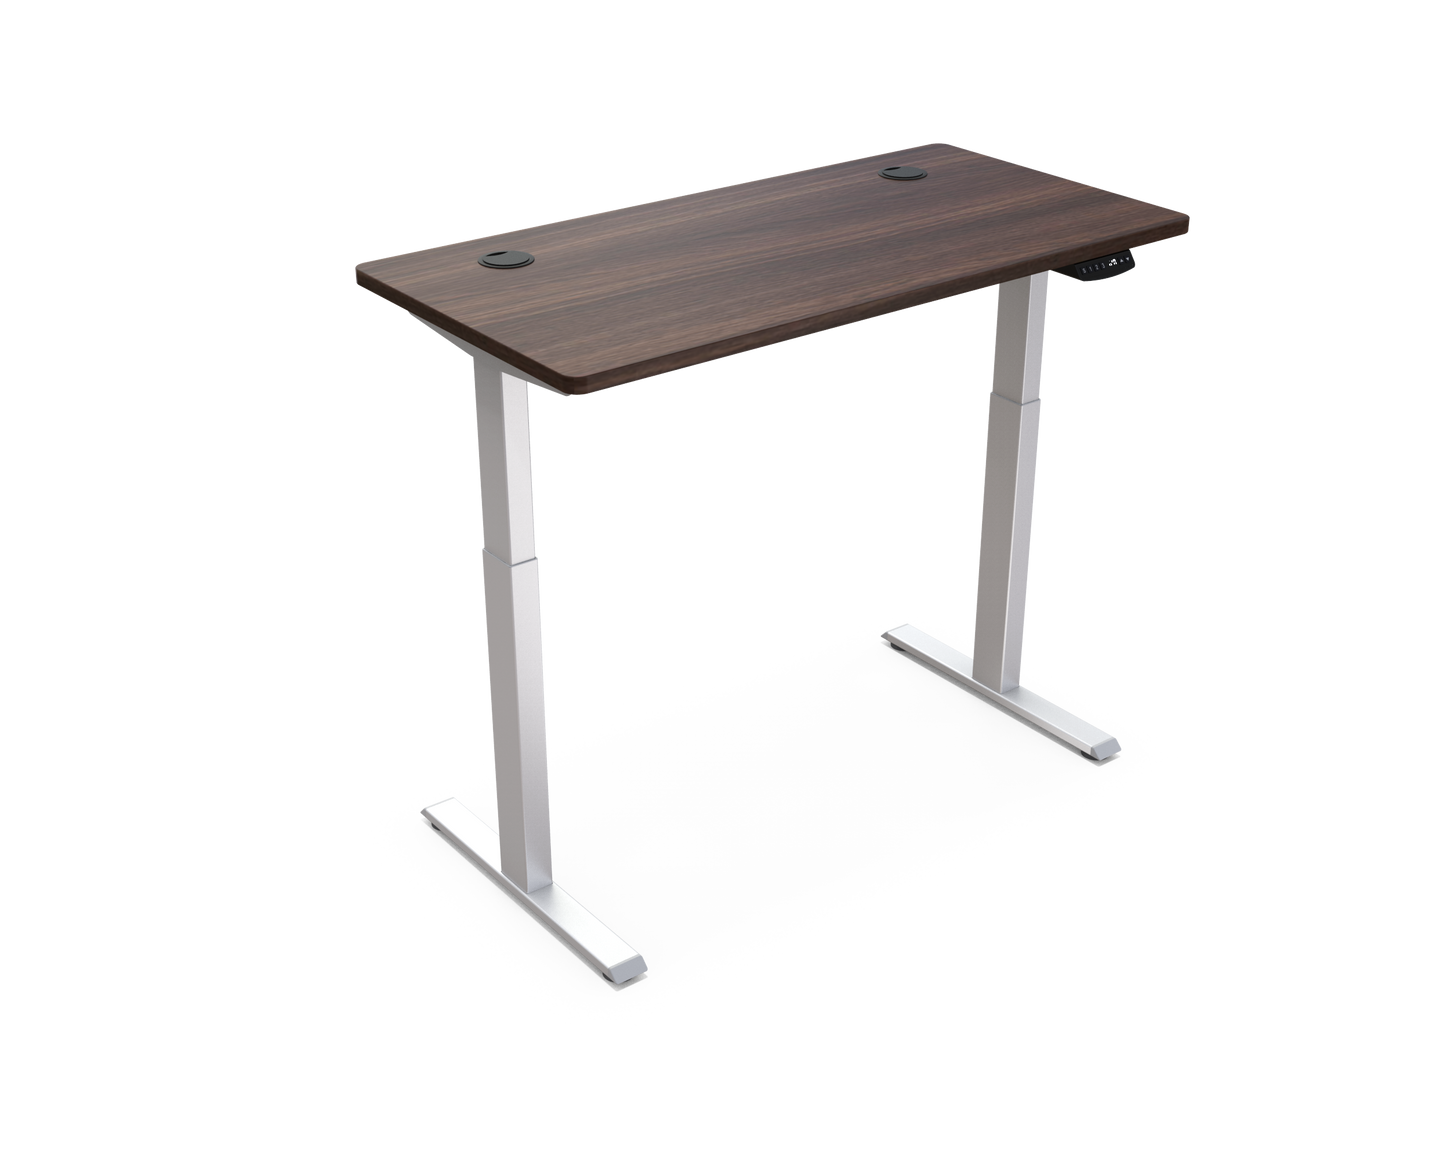 Rectangular Electric Height Adjustable Standing Desk